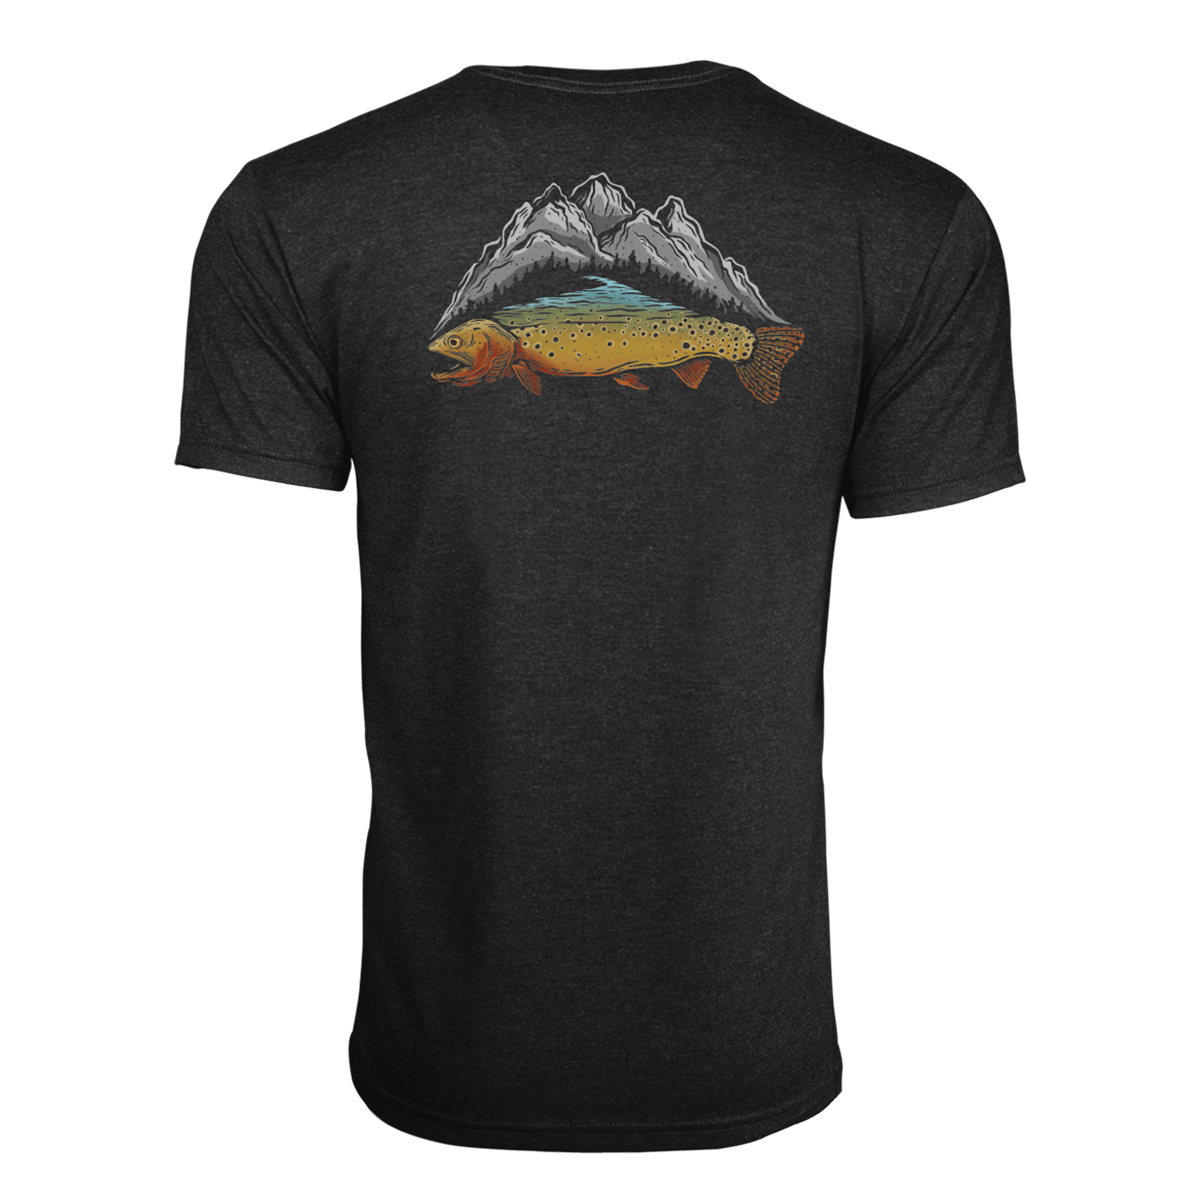 Trout Fishing Shirt 80s Thompson Creek Alaska T-shirt River Guide Fish  Fisherman Graphic Tee Tourist Black Vintage 1980s Large L 